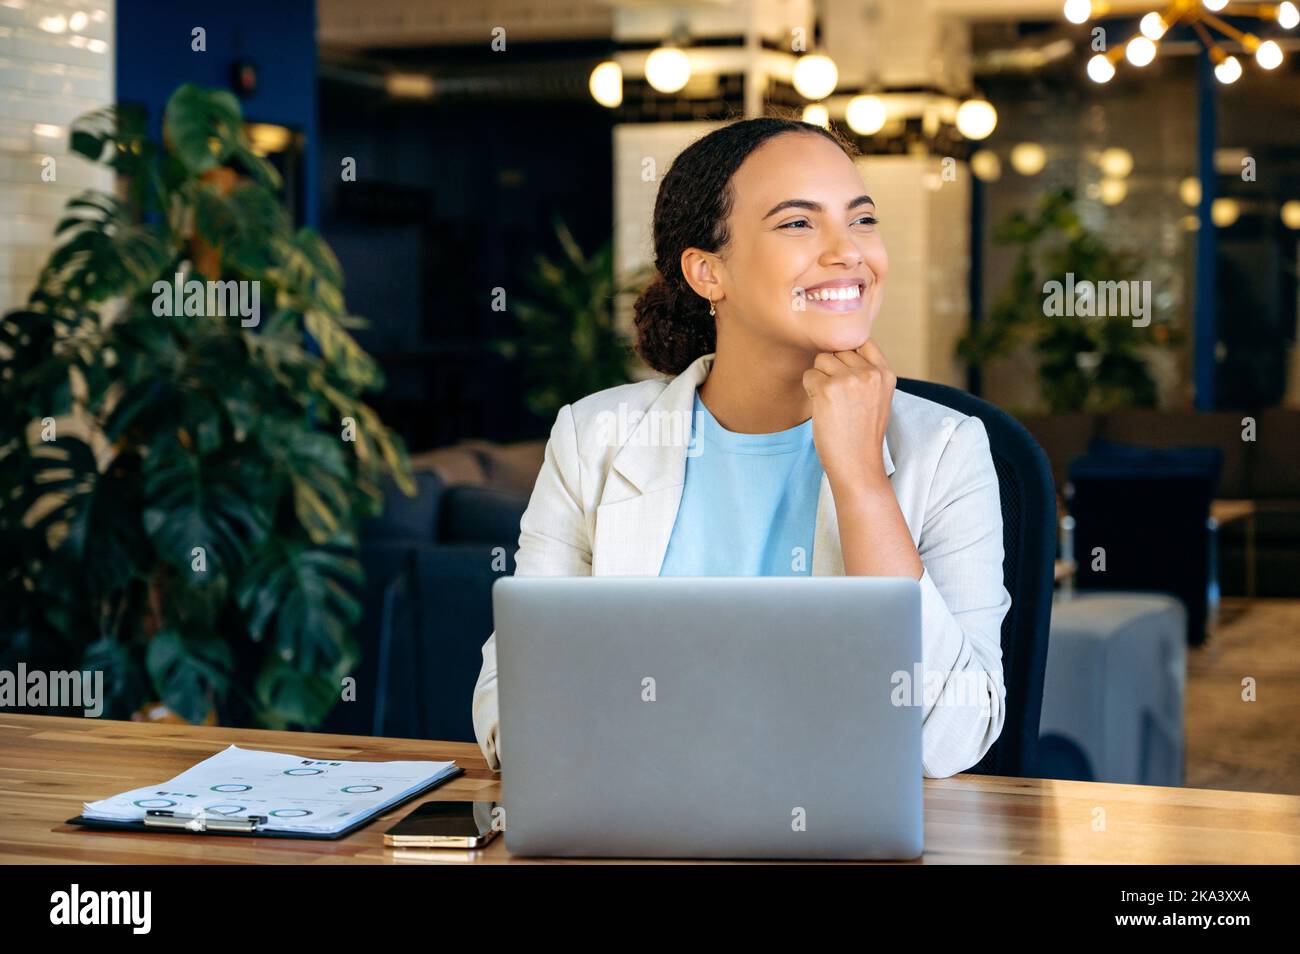 Glückliche erfolgreiche Mixed-Race-Geschäftsfrau, Programmiererin, Rekrutierung, in einer stilvollen Business-Kleidung, sitzt am Schreibtisch im Büro vor einem Laptop, wegschauen, denken, träumen, lächeln Stockfoto